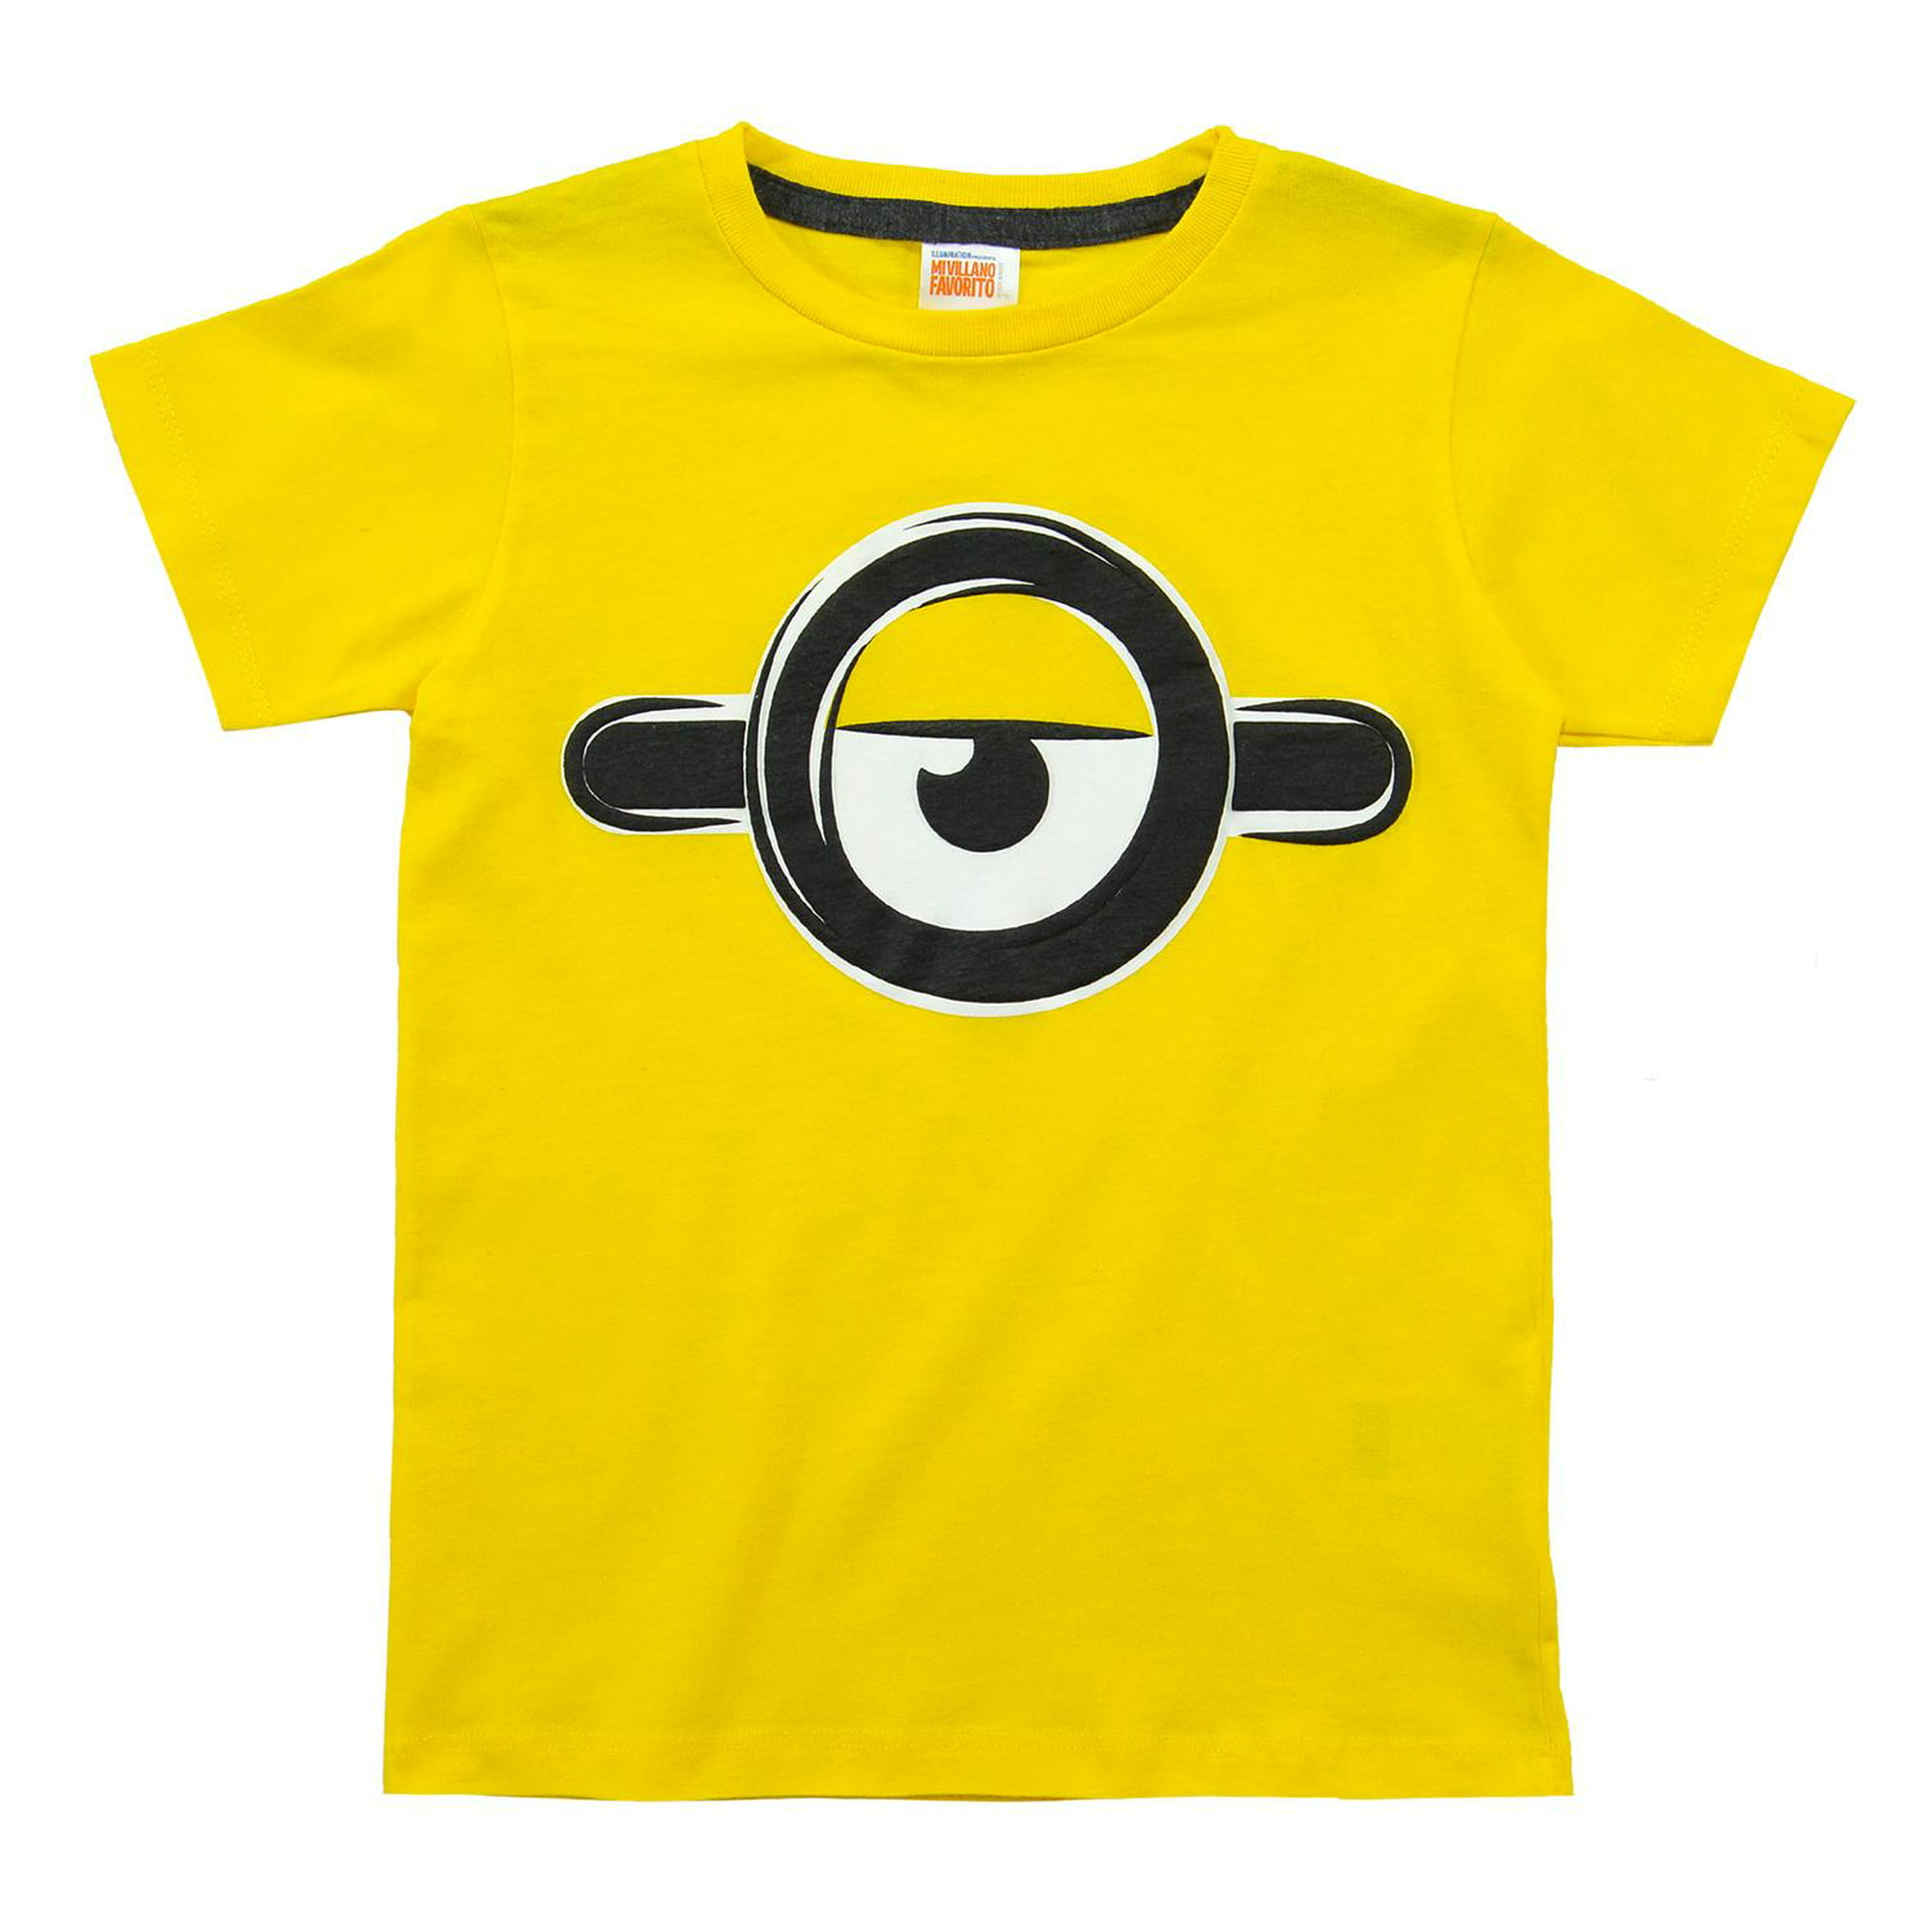 Camiseta de niño ,manga corta amarilla de minions - Tienda Online MIC